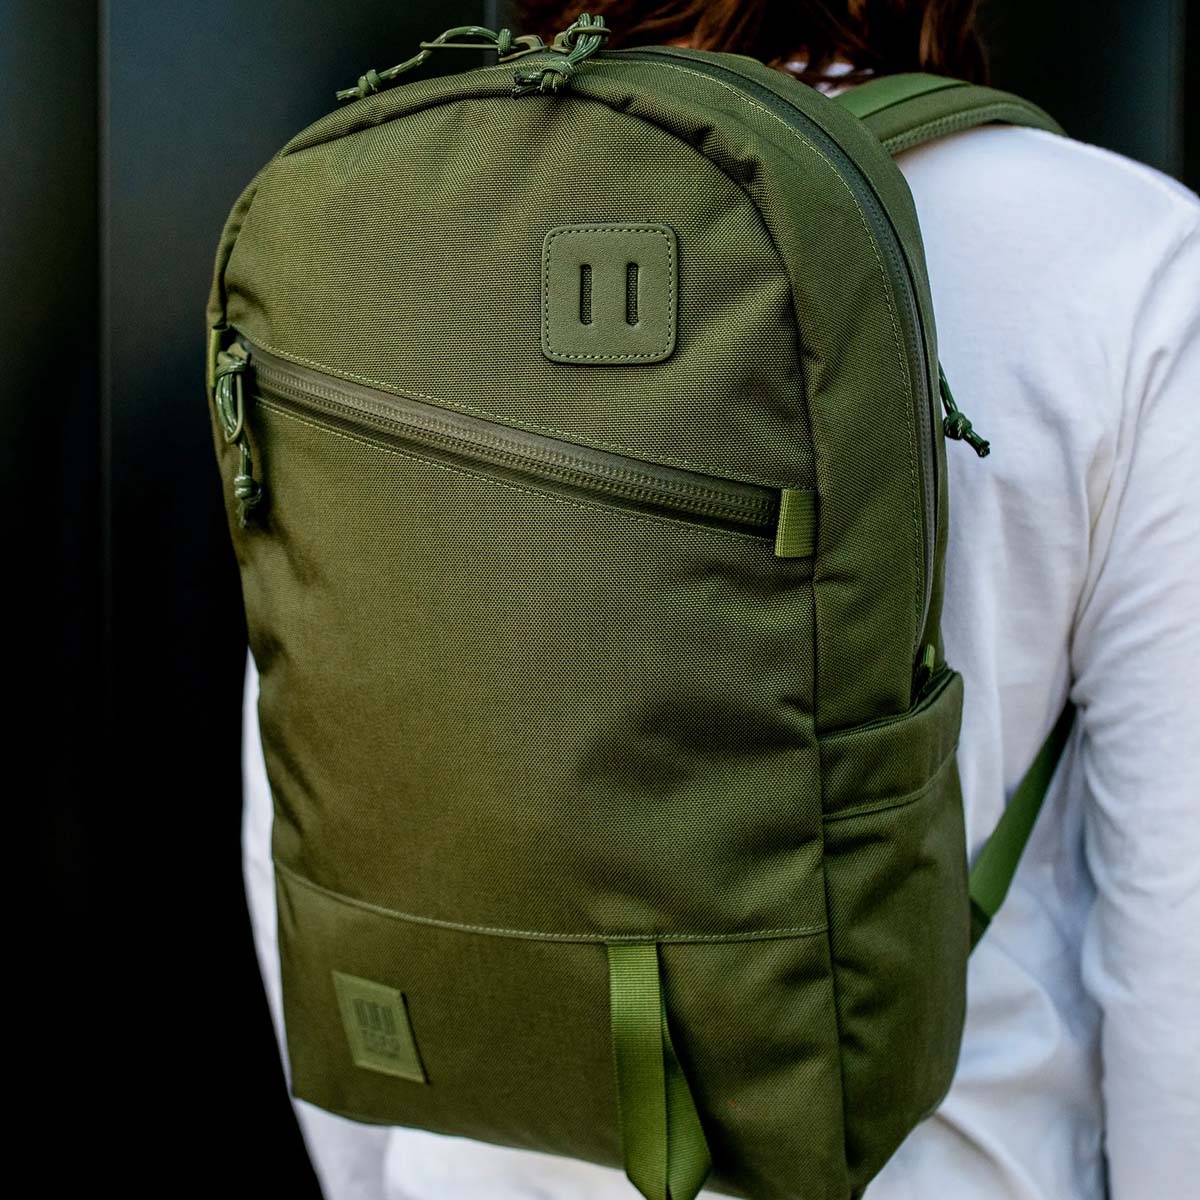 Topo Designs Daypack Tech Olive, zeer sterke rugzak met klassieke uitstraling, uitermate geschikt voor dagelijks gebruik